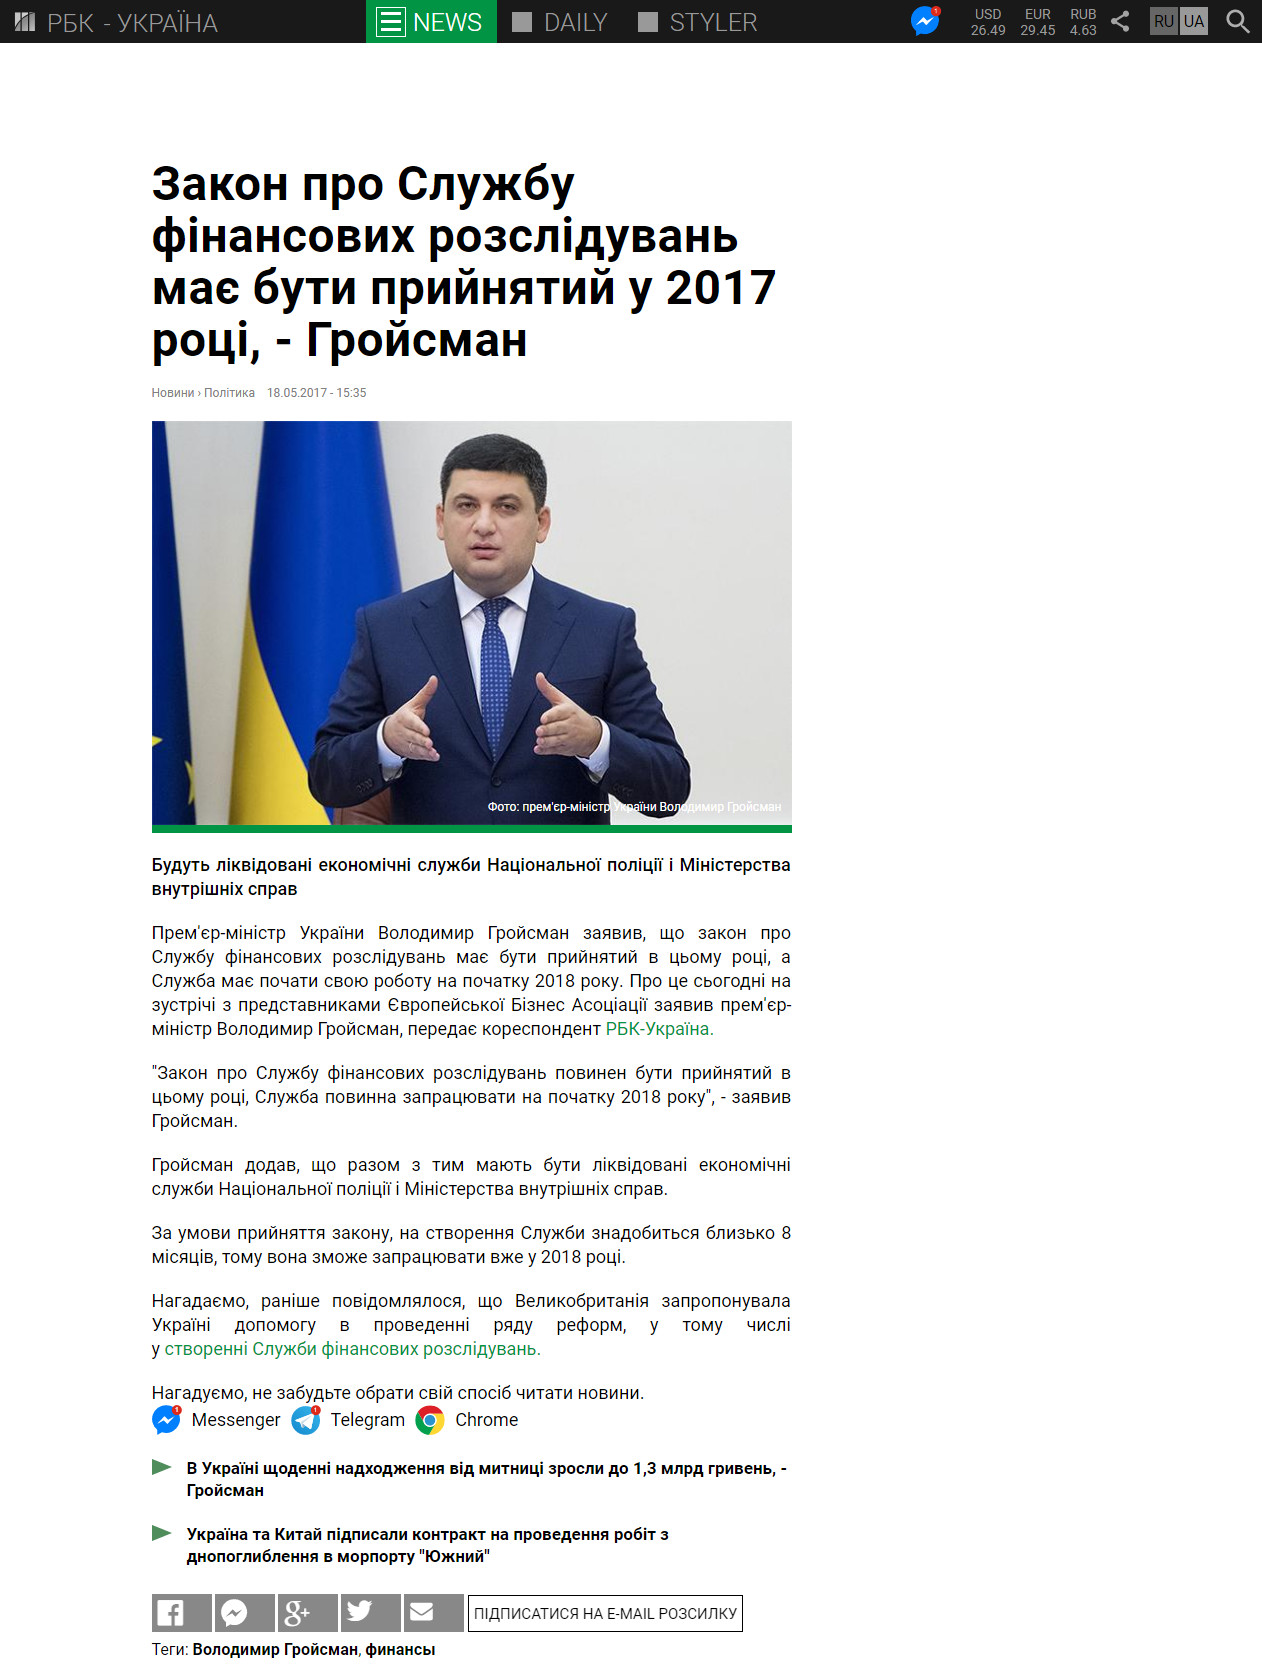 https://www.rbc.ua/ukr/news/zakon-sluzhbe-finansovyh-rassledovaniy-dolzhen-1495110961.html